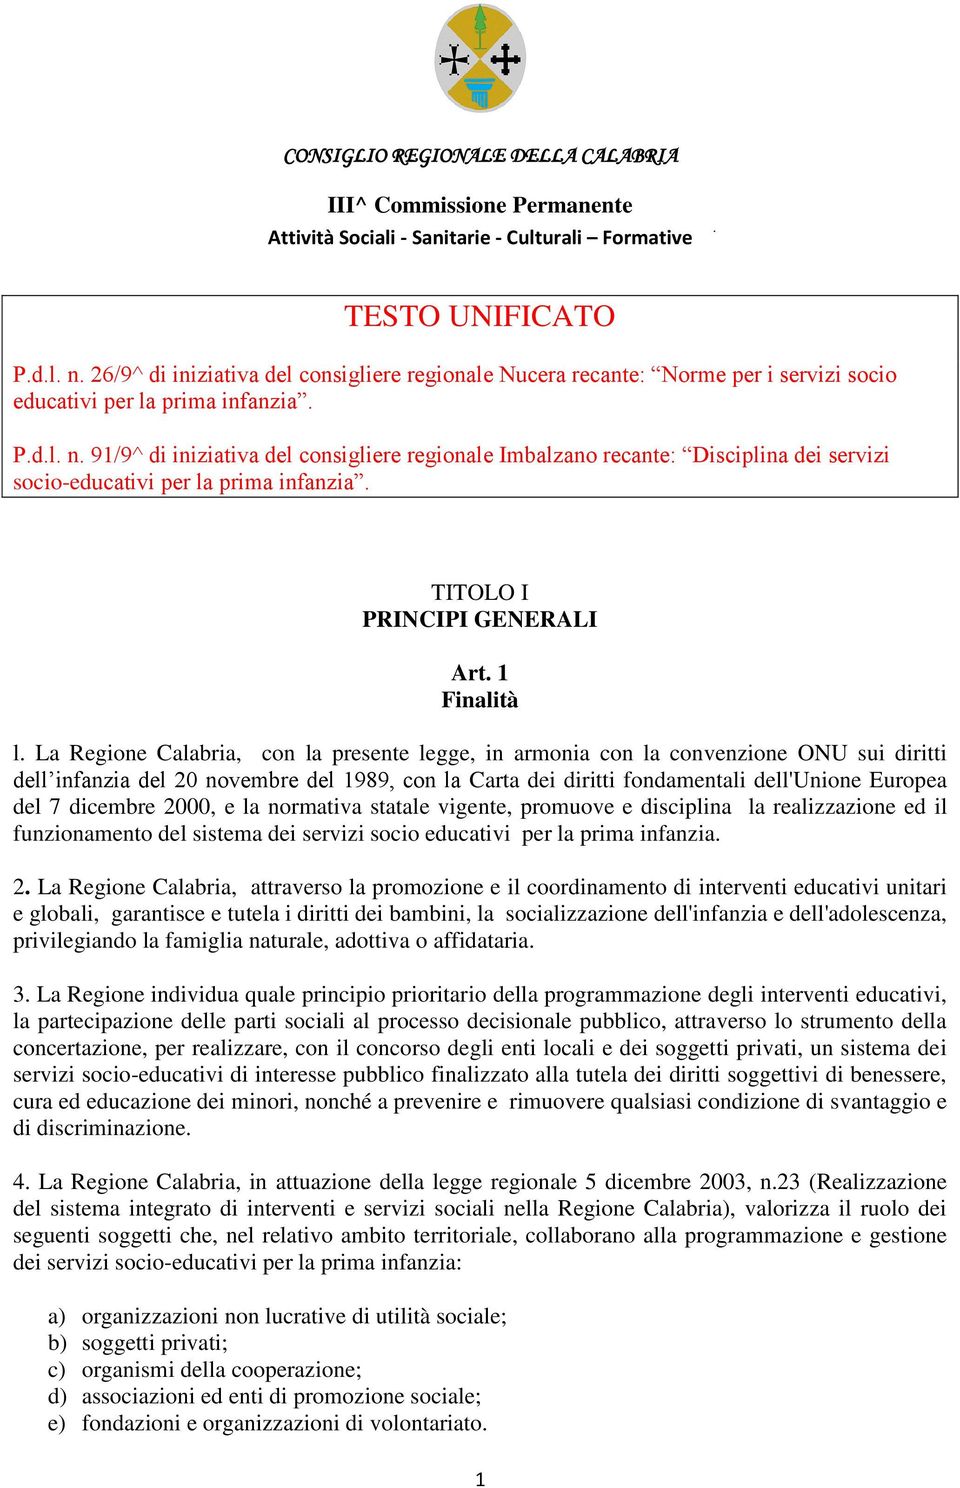 La Regione Calabria, con la presente legge, in armonia con la convenzione ONU sui diritti dell infanzia del 20 novembre del 1989, con la Carta dei diritti fondamentali dell'unione Europea del 7